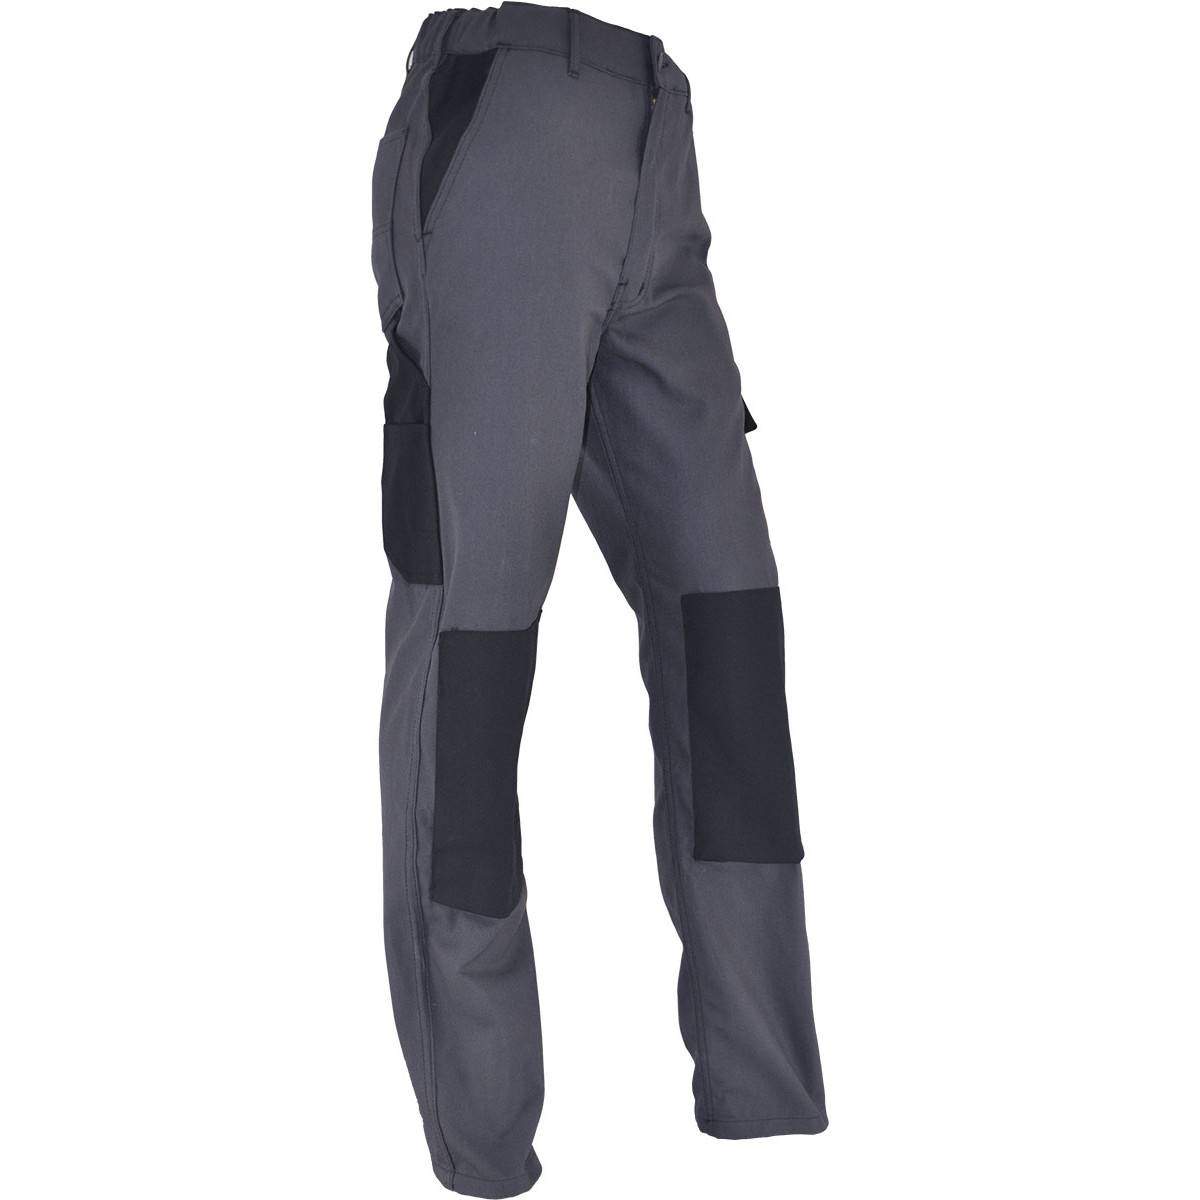 PMPC pantaloni da lavoro comfort taglia 46, grigio antracite